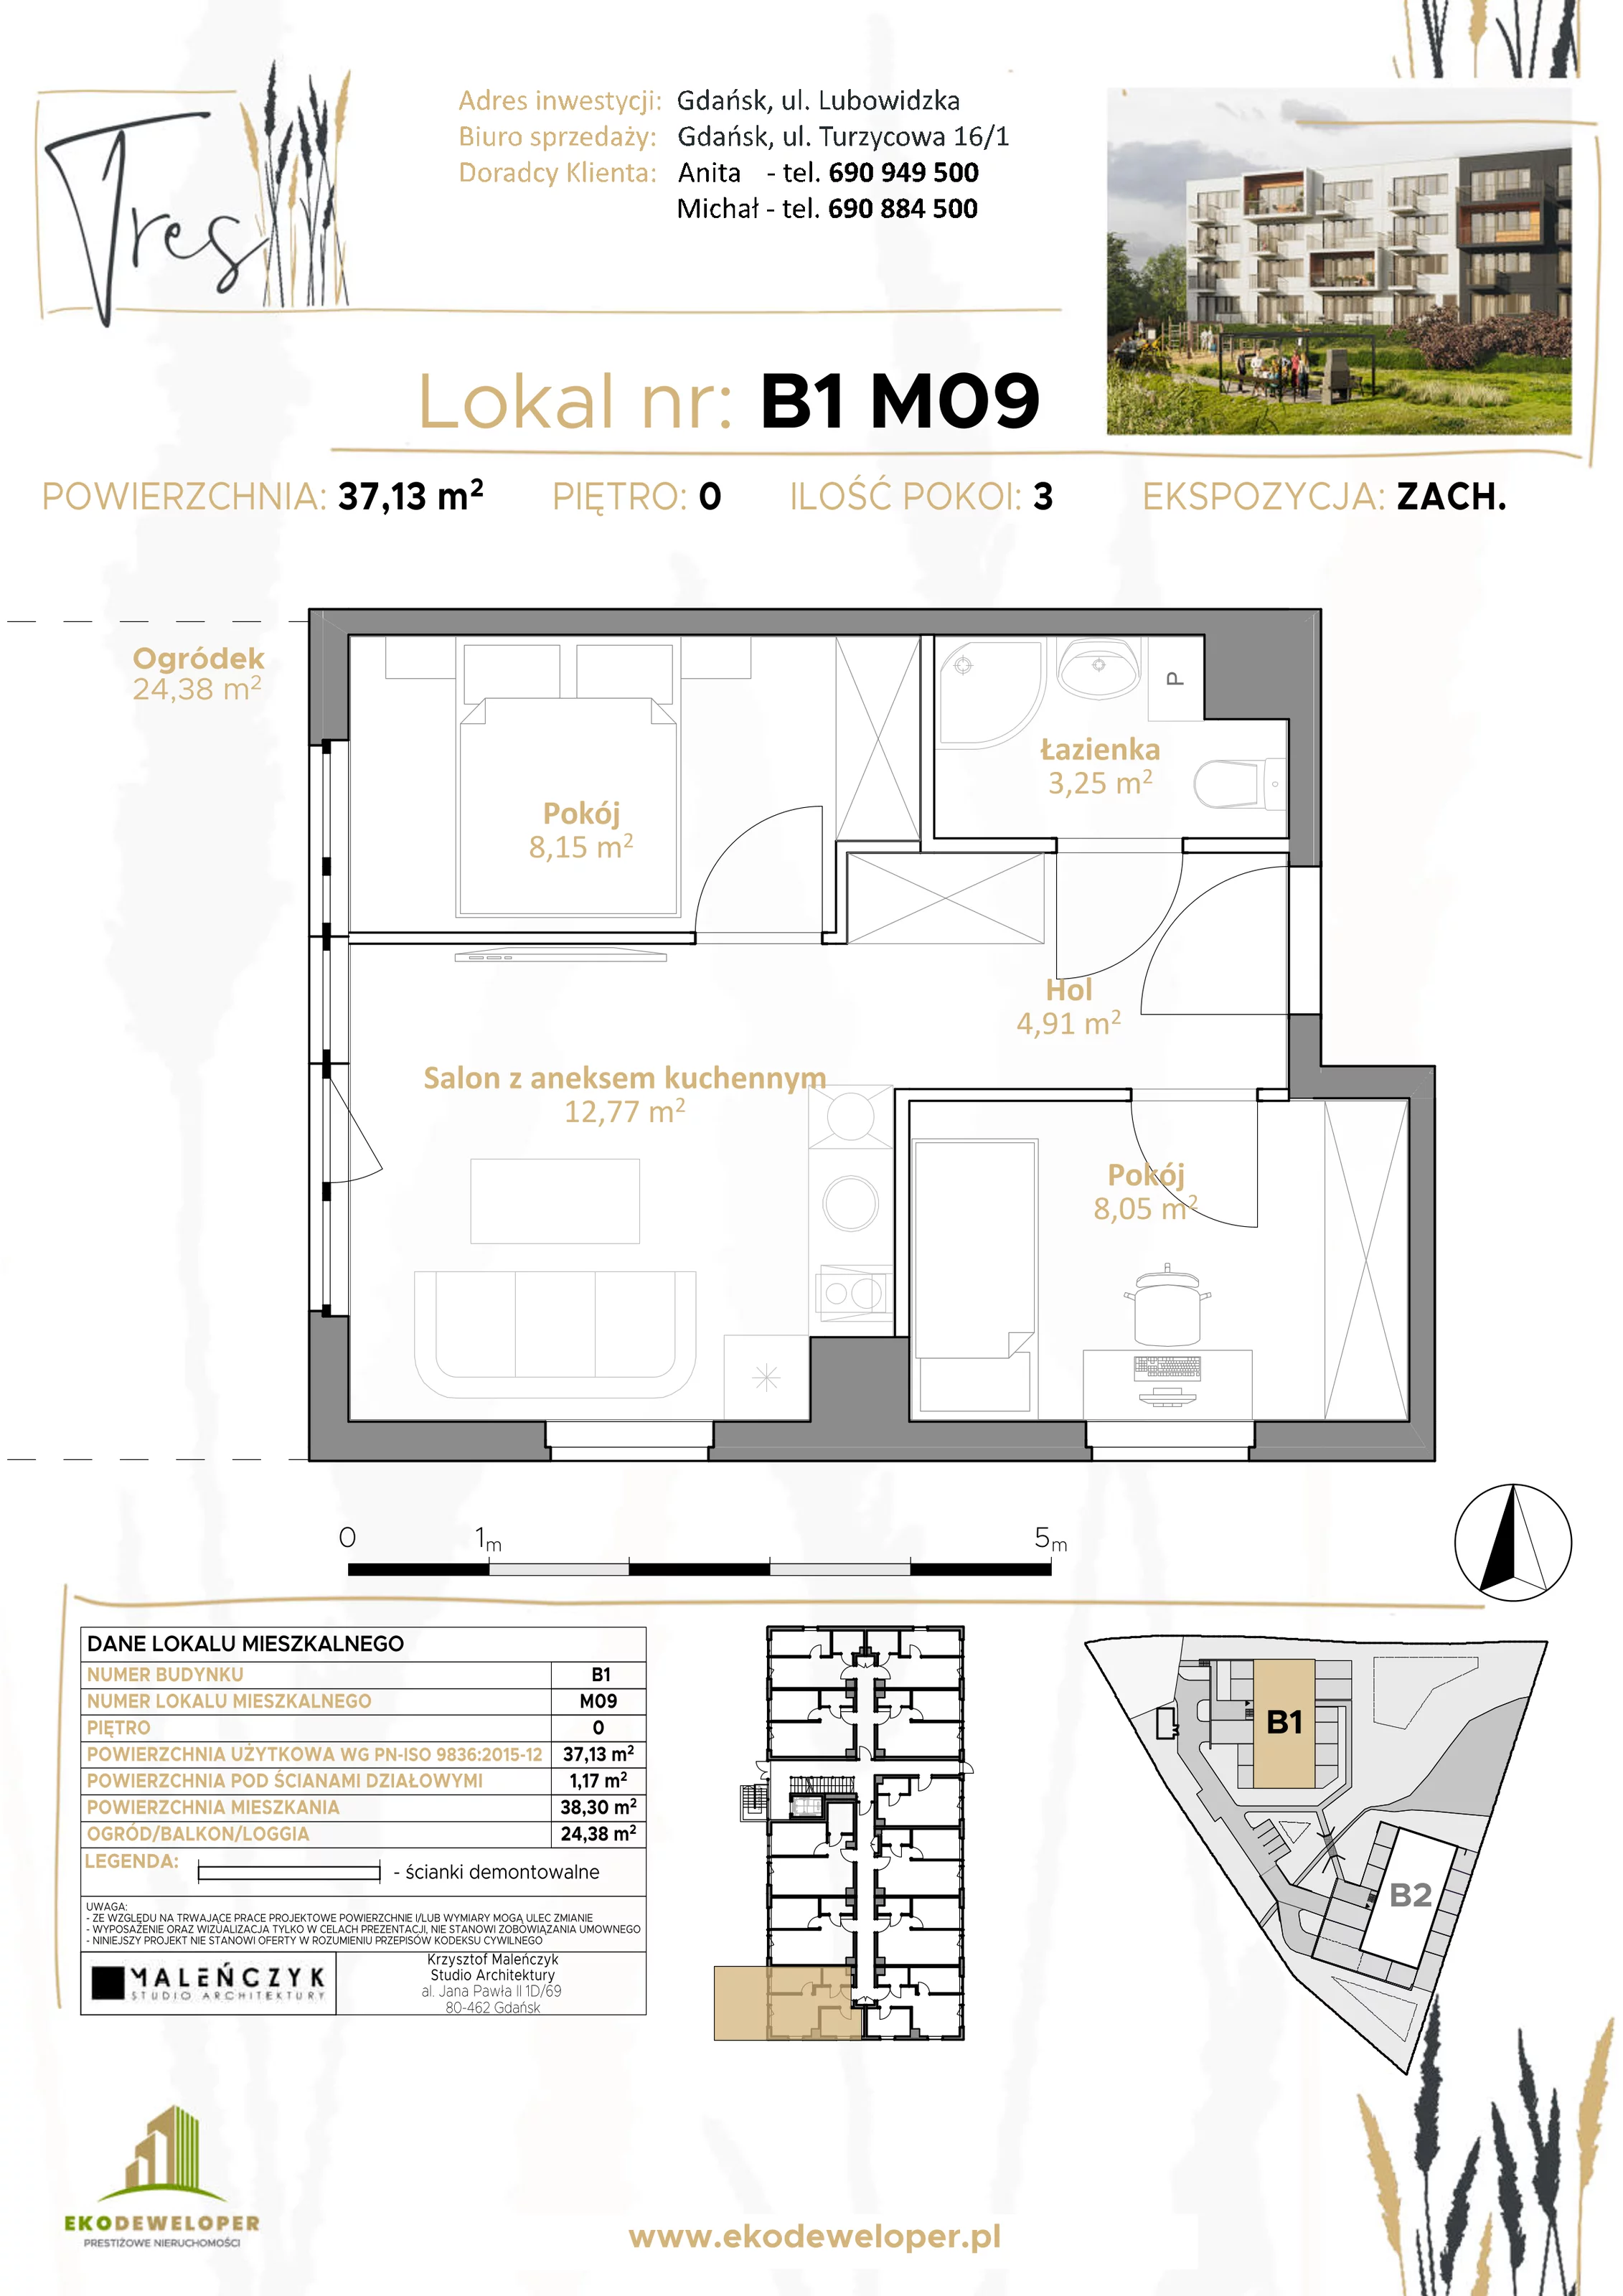 Mieszkanie 37,13 m², parter, oferta nr B1.M09, Tres, Gdańsk, Jasień, ul. Lubowidzka